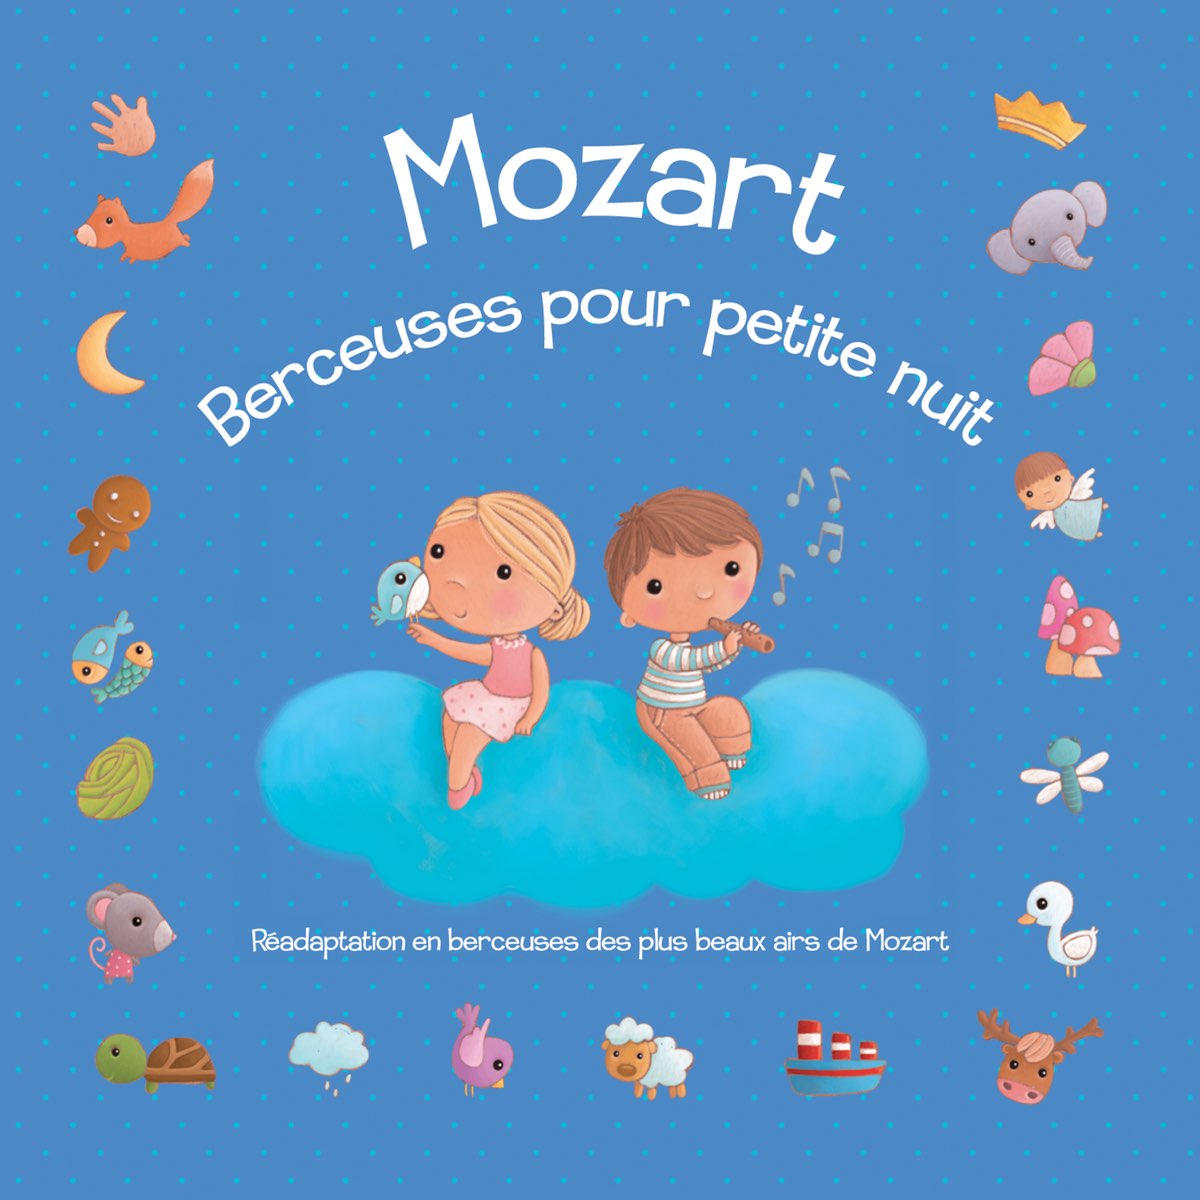 Mozart : Berceuses pour petite nuit (Réadaptation en berceuses des plus  beaux airs de Mozart) – Album par Le Marchand de Sable – Apple Music